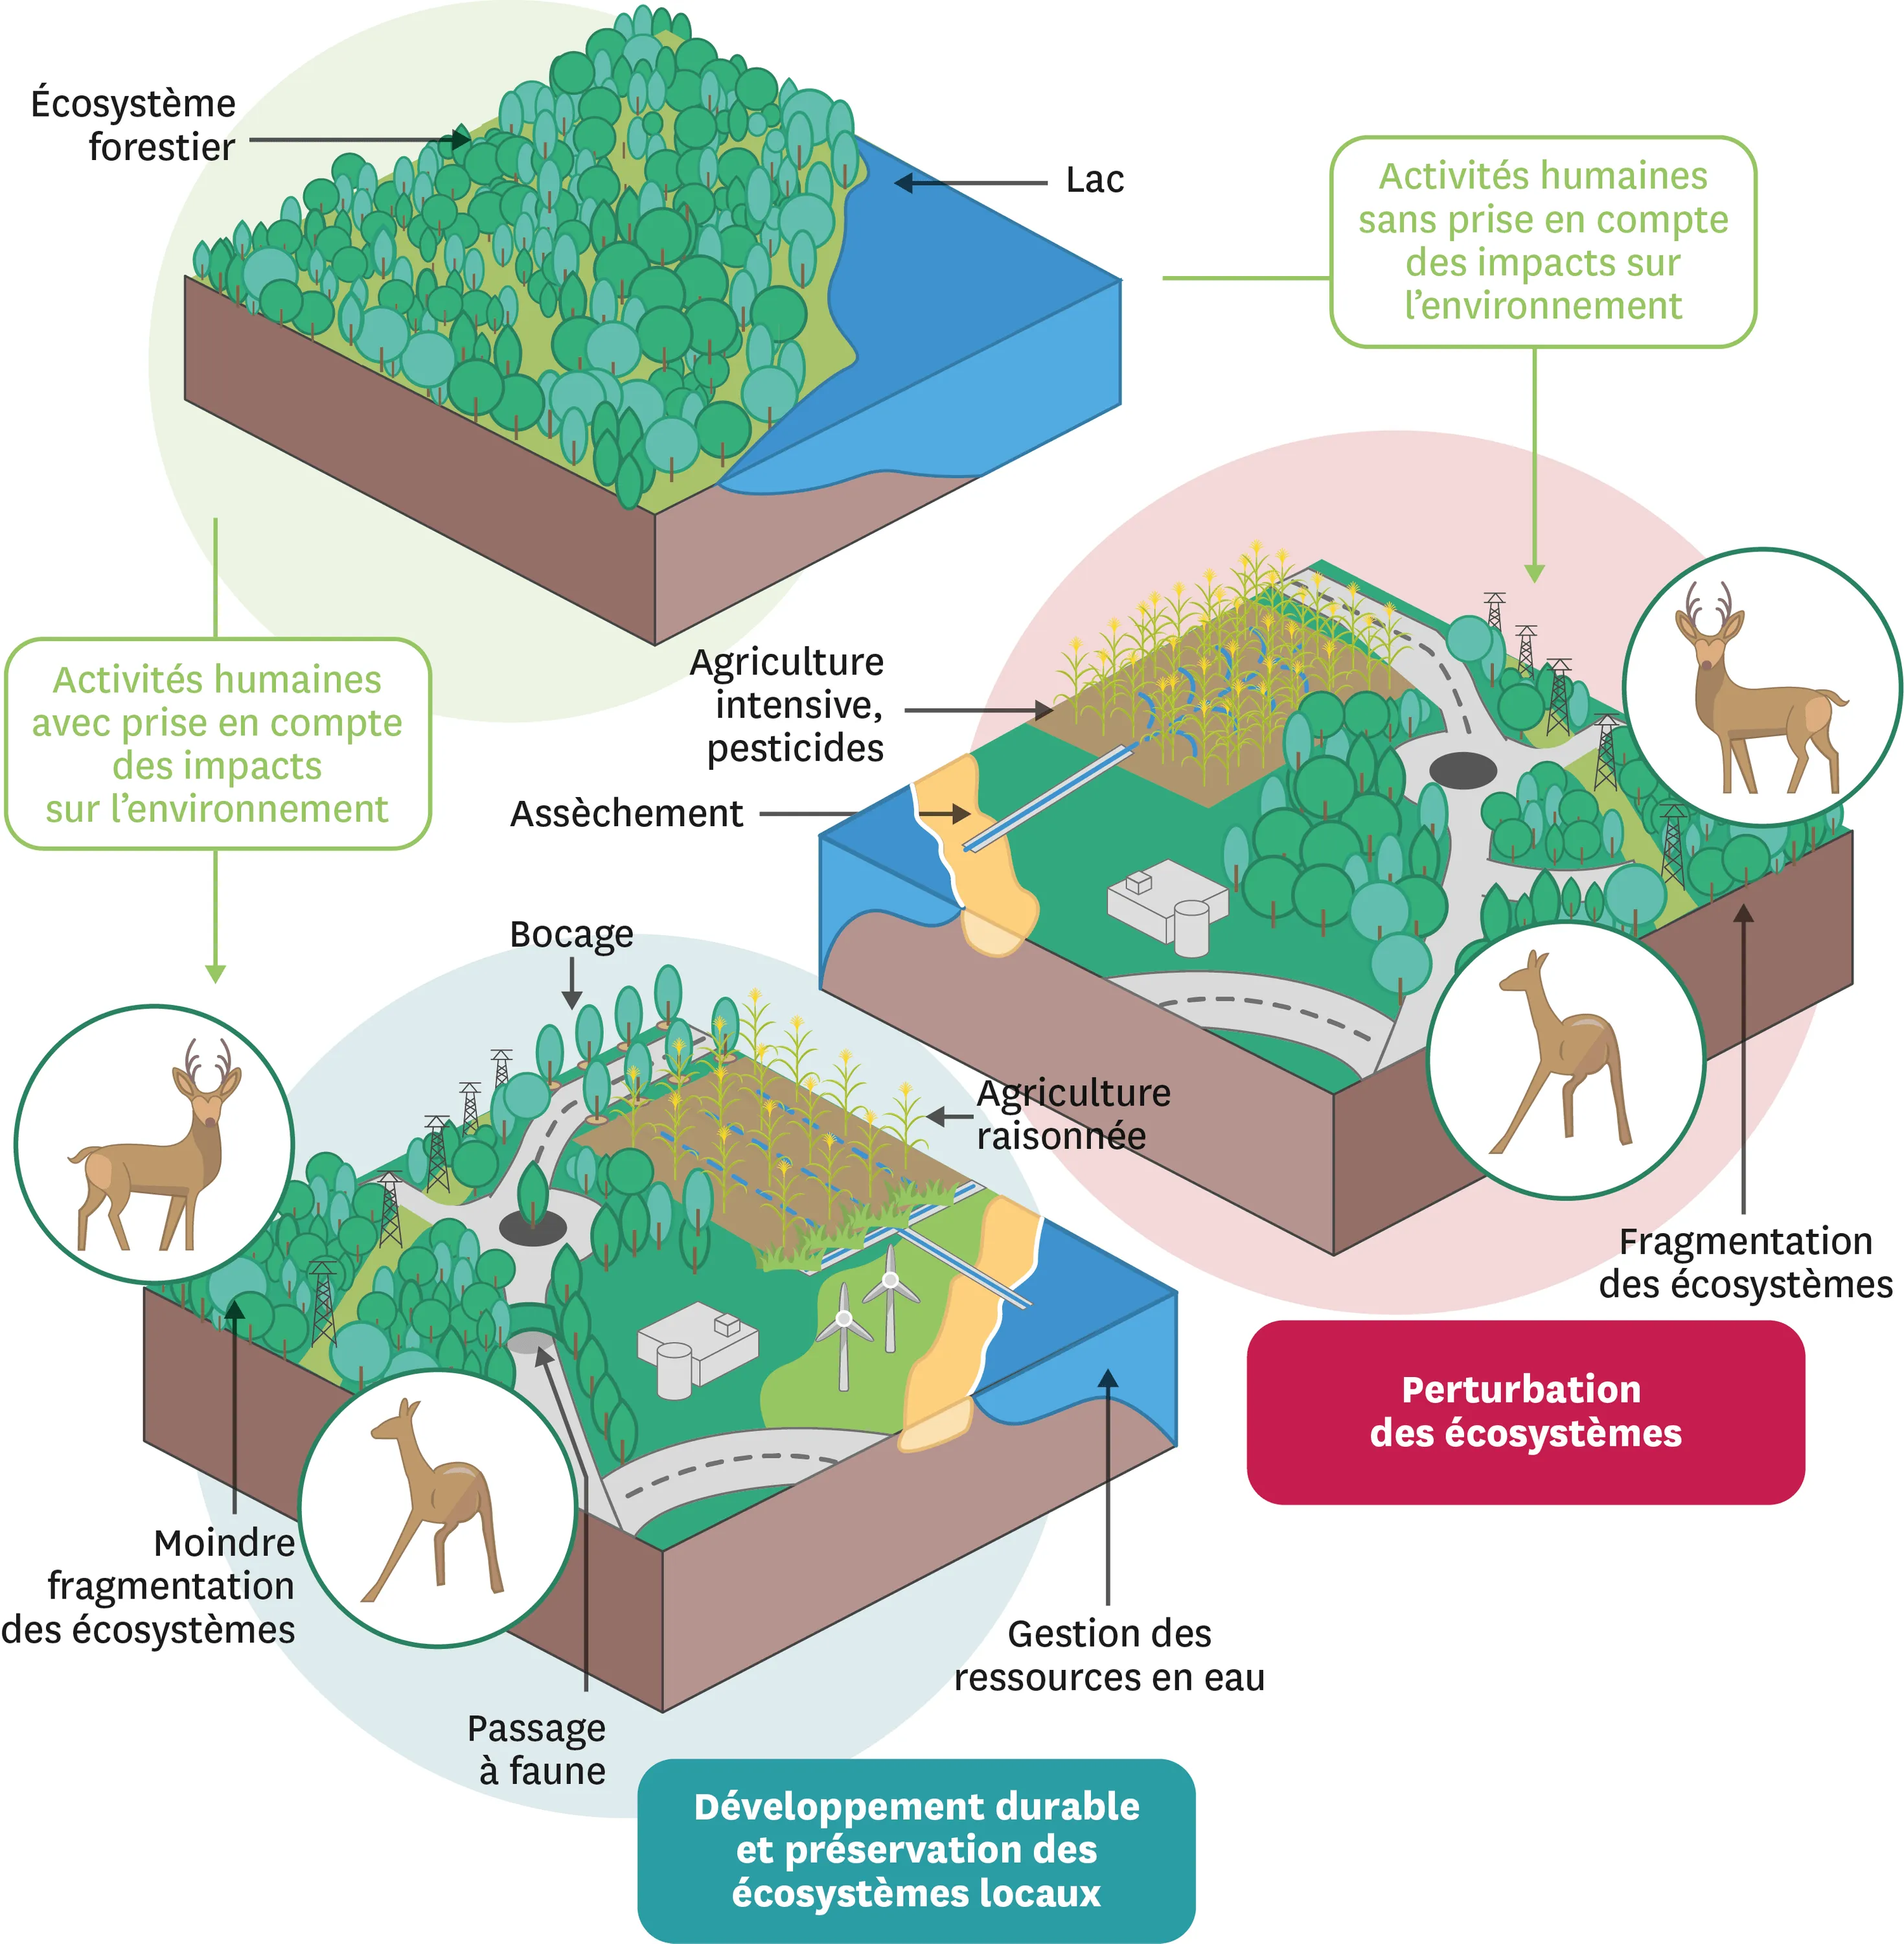 Schéma du développement, des préservations et de pérturbation des ecosystèmes.